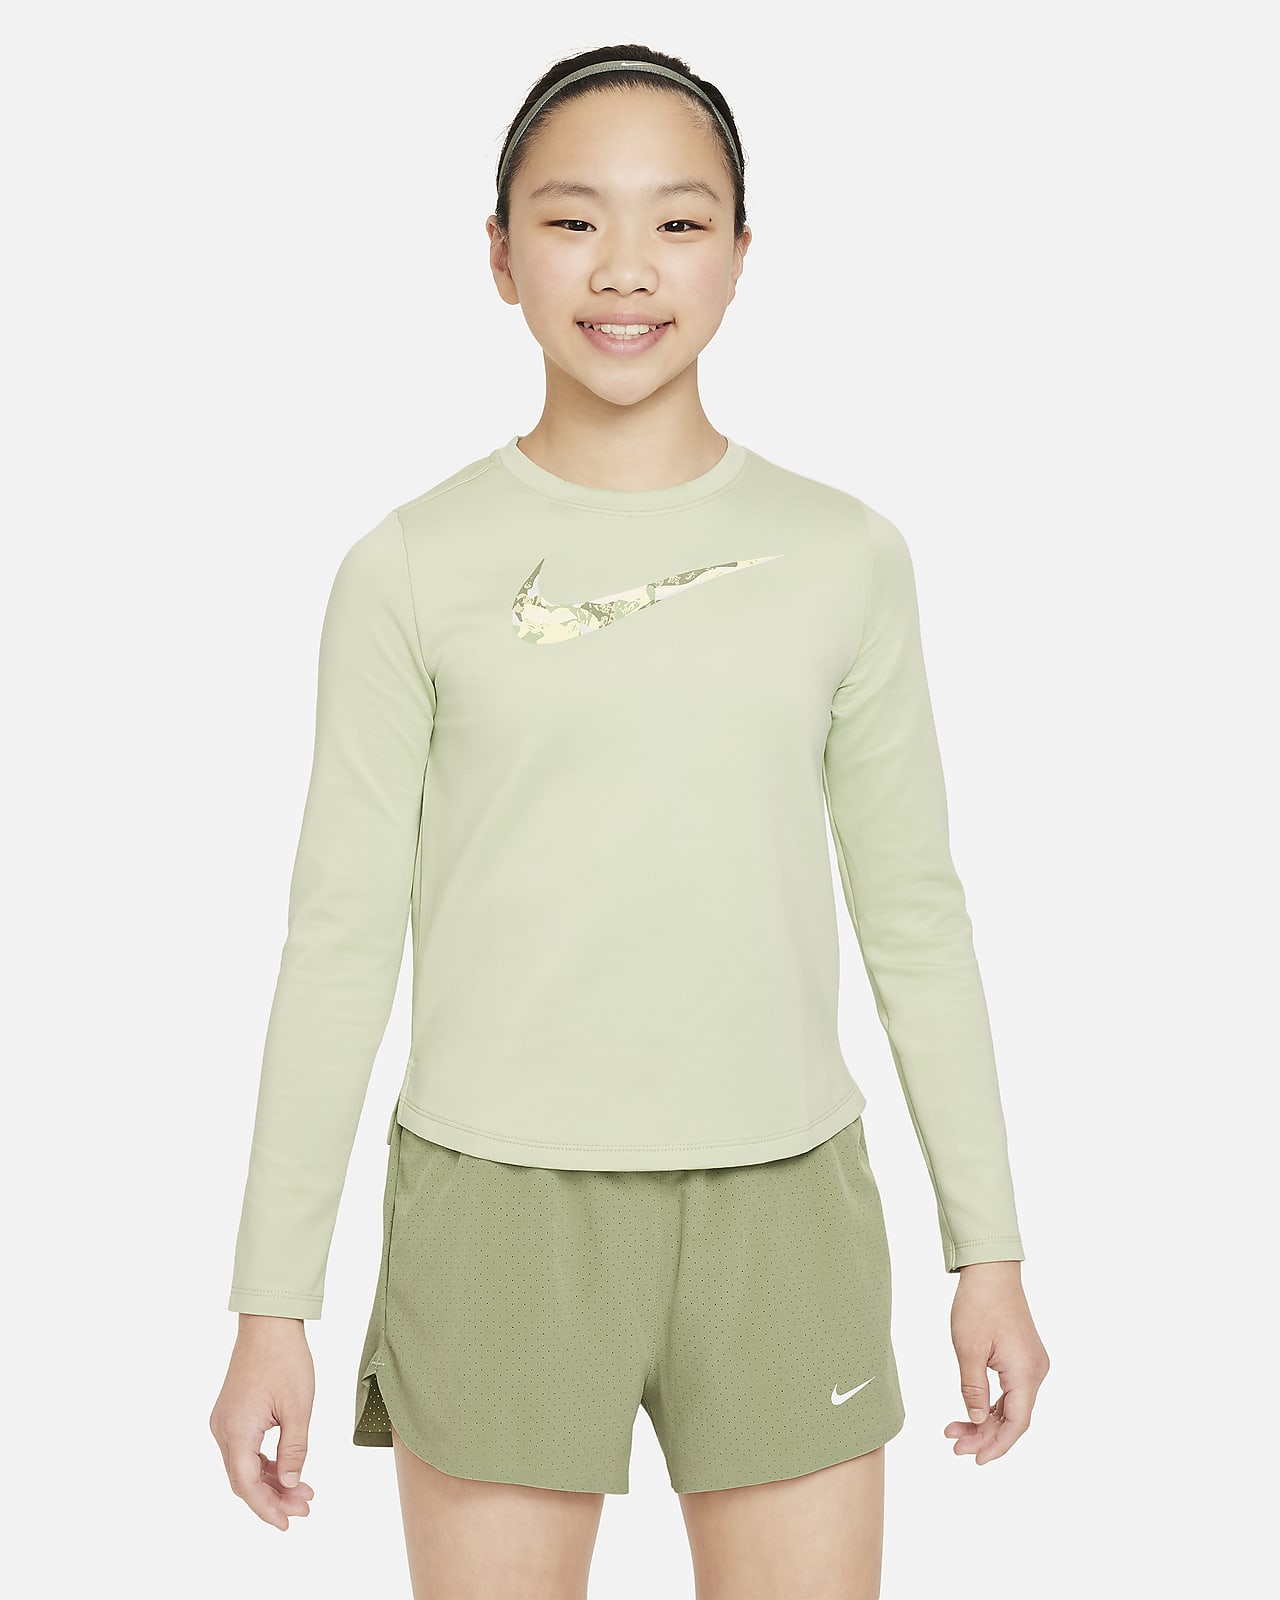 Nike One Older Kids' (Girls') Dri-FIT Sports Bra